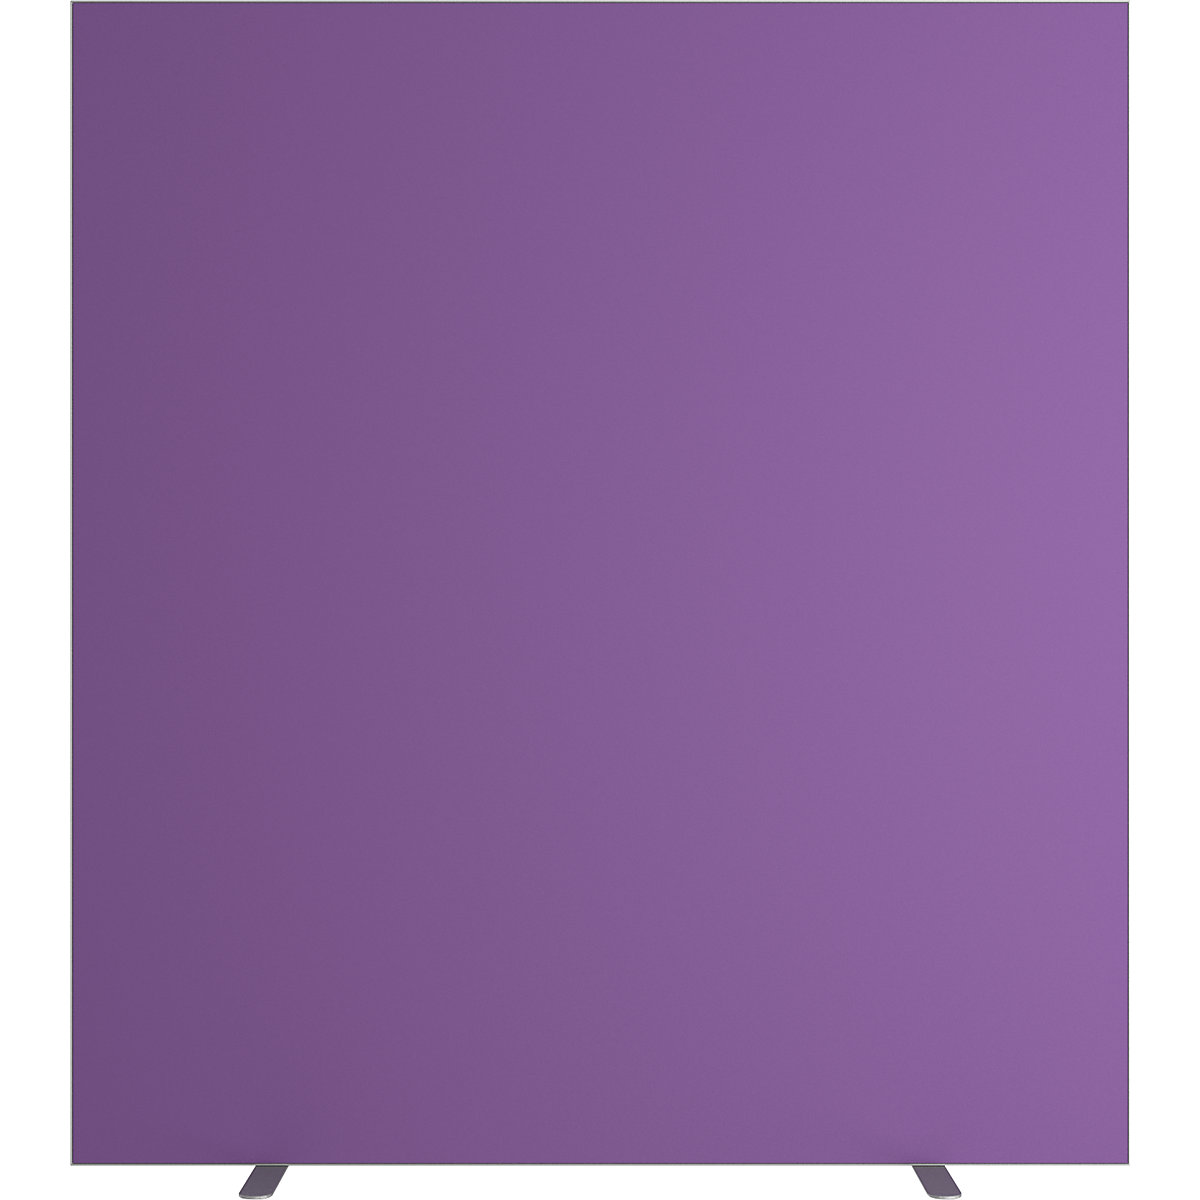 Trennwand easyScreen, einfarbig, lila, Breite 1600 mm-14